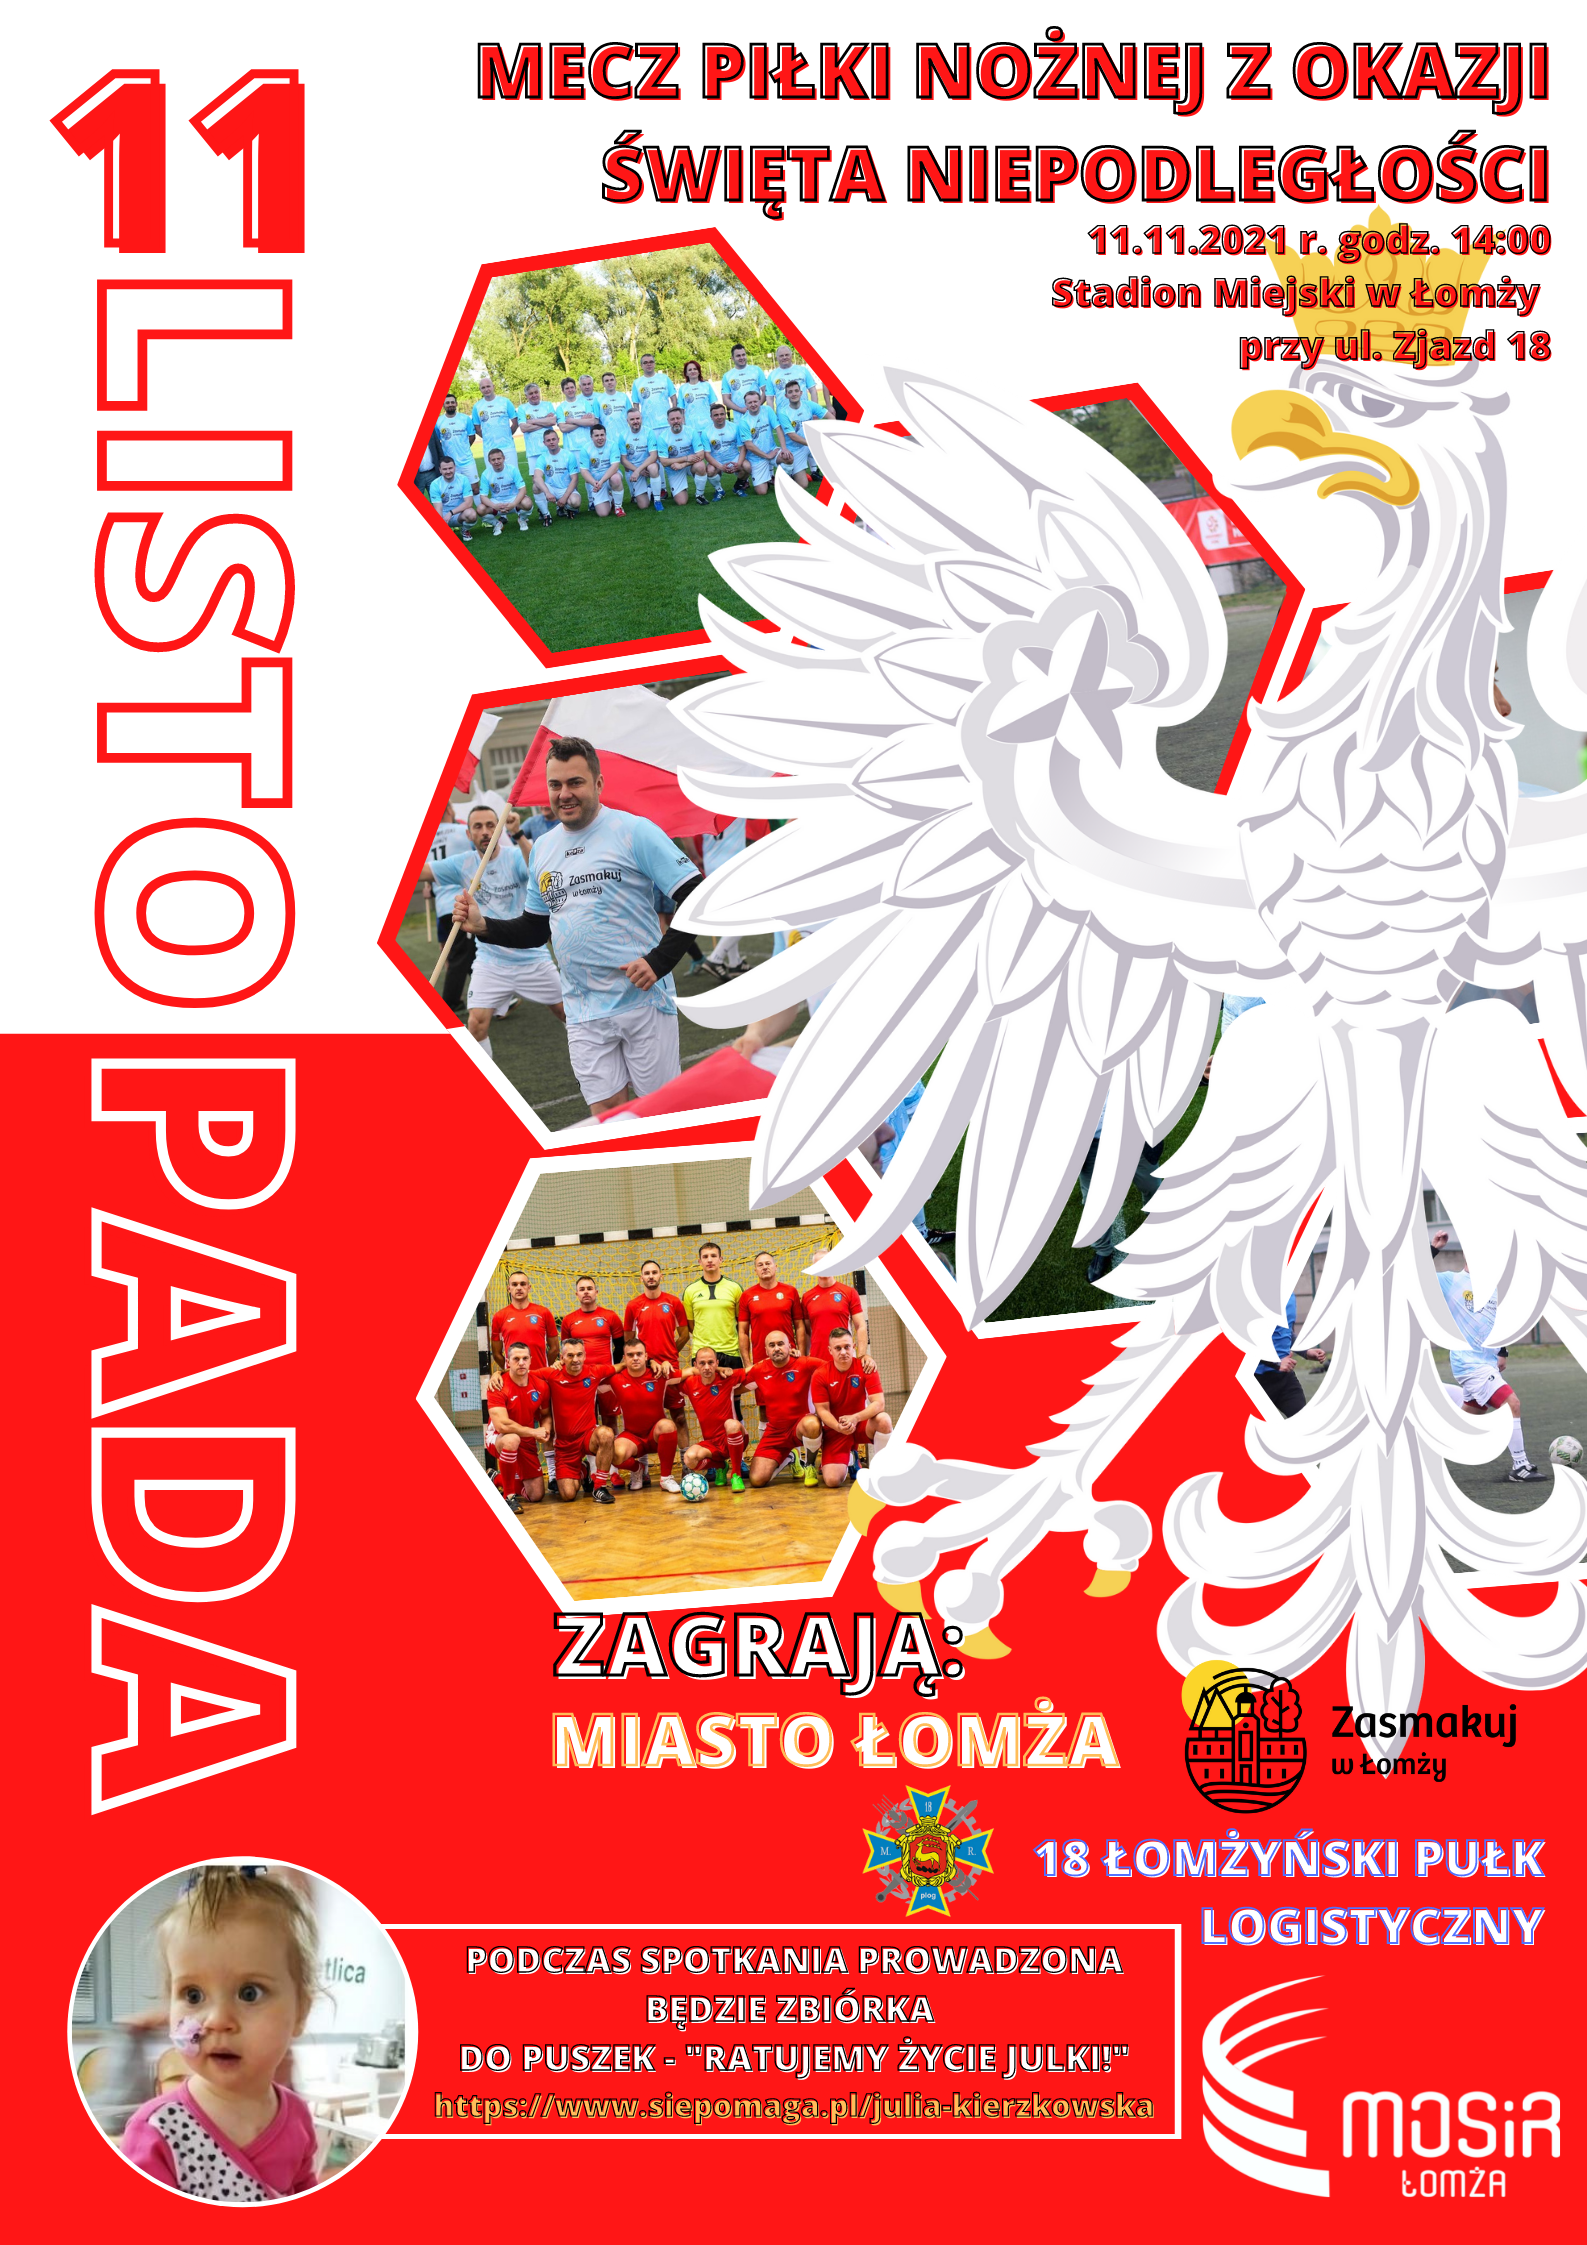 Grafika ze zdjęciami drużyn i Godłem Polskizapraszająca do udziału w meczu piłki nożnej